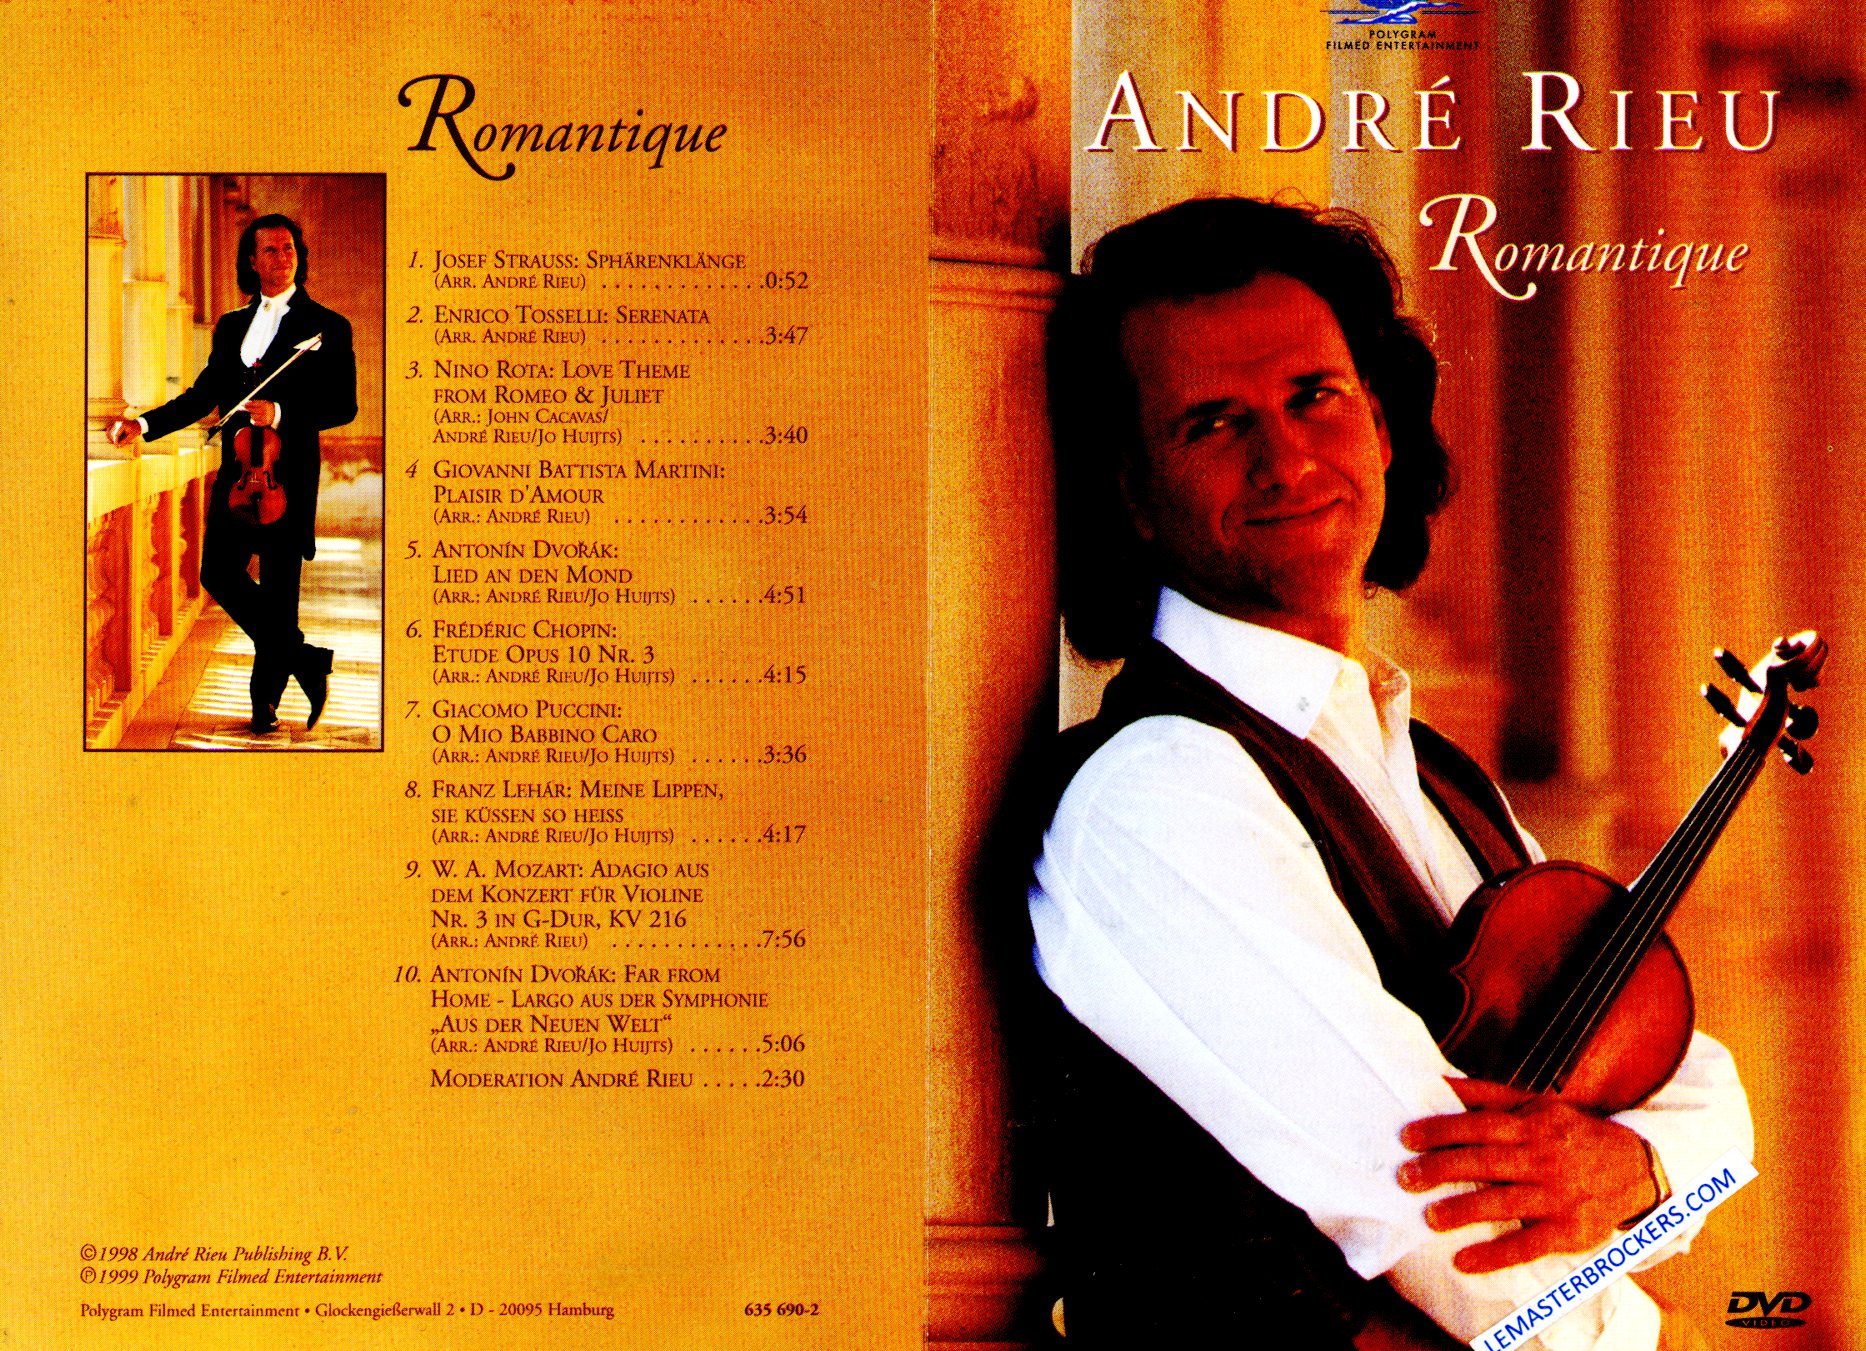 ANDRÉ RIEU ROMANTIQUE DVD OCCASION 780063569026